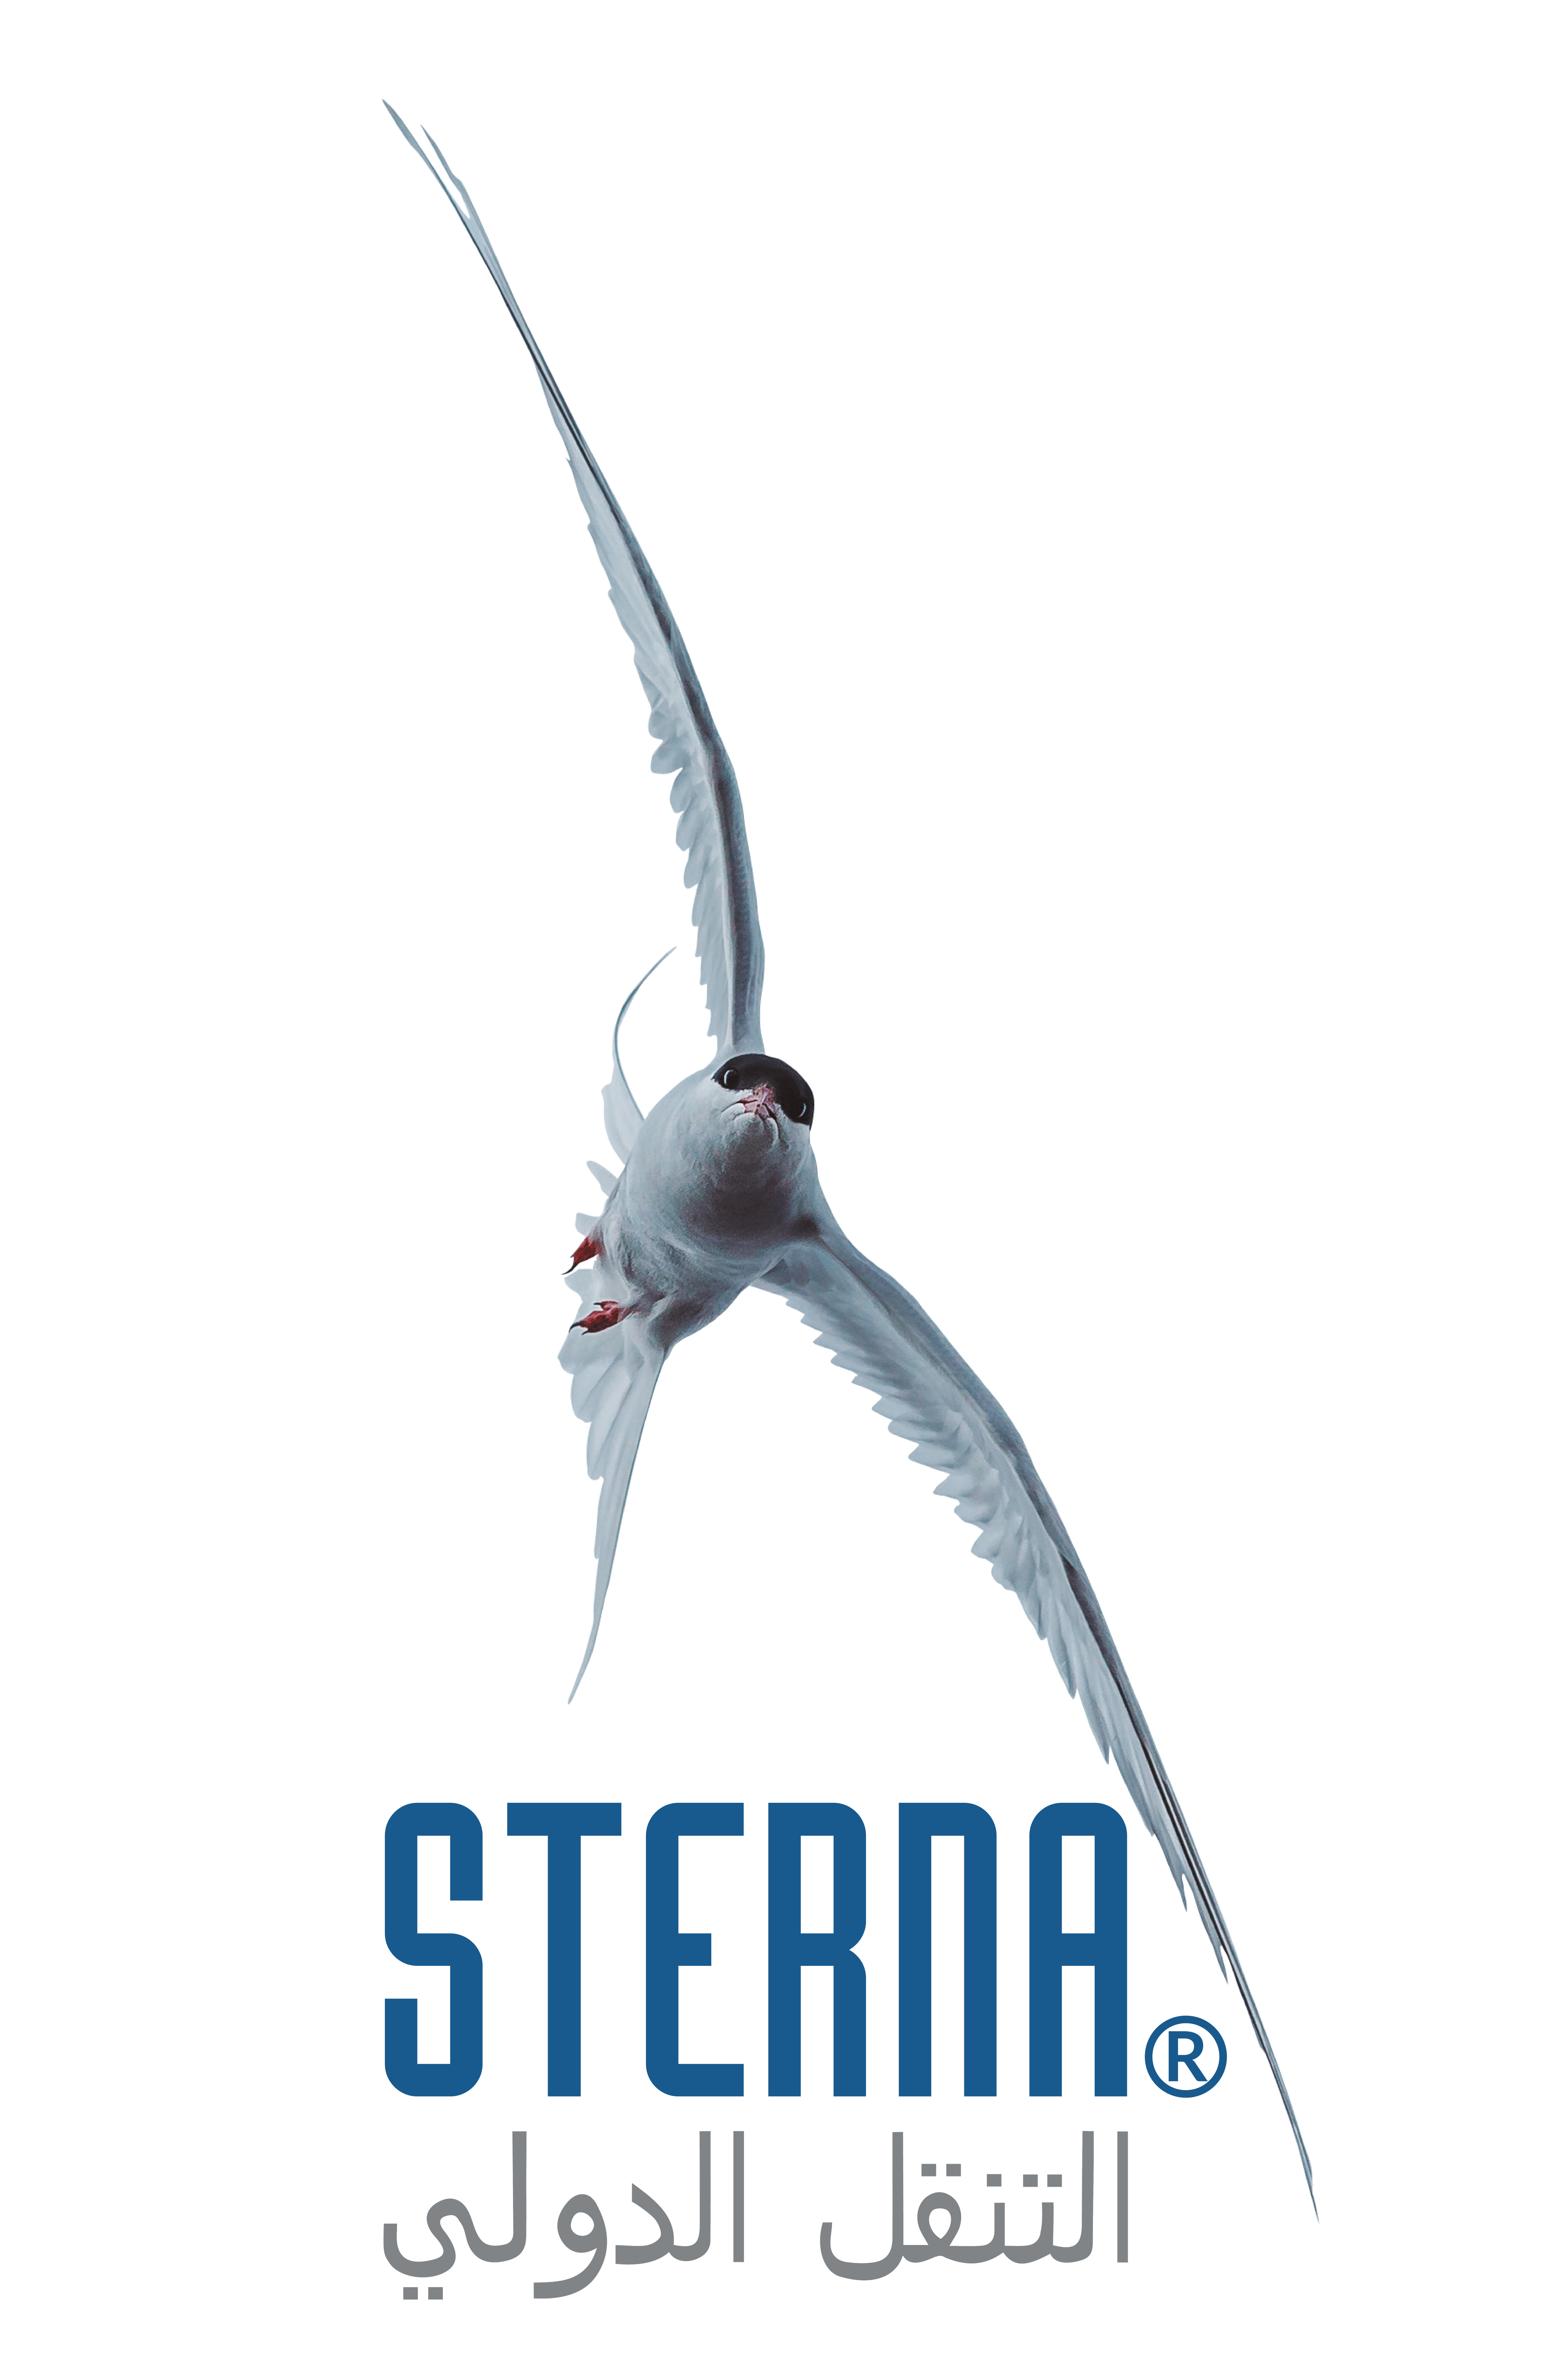 Logo STERNA as sterna bird